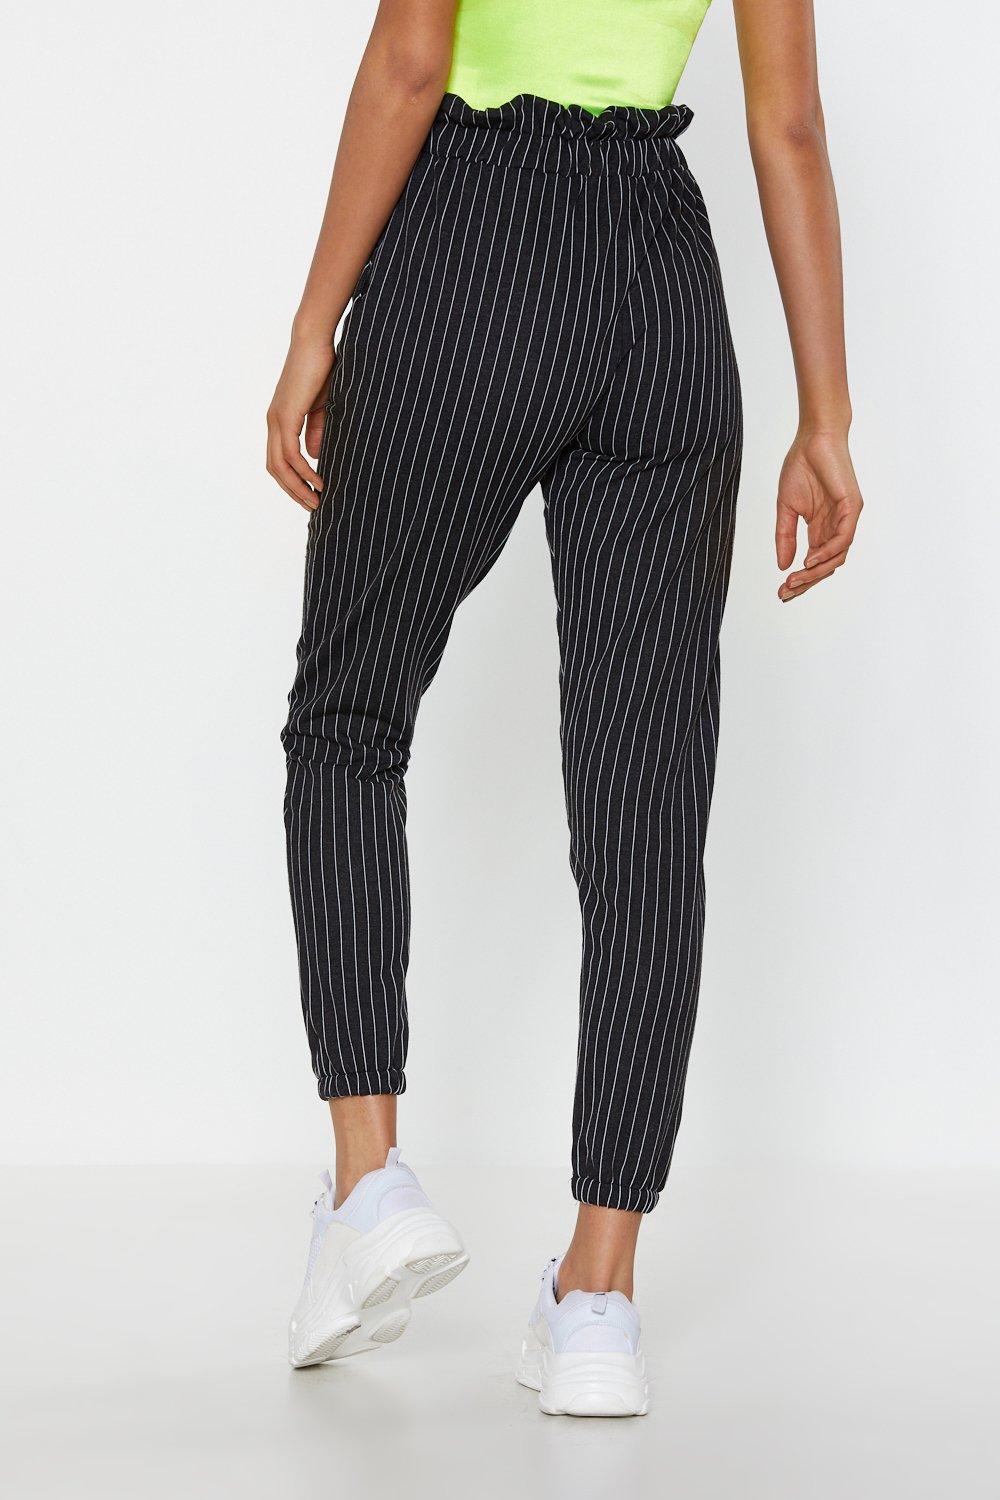 pin striped pants